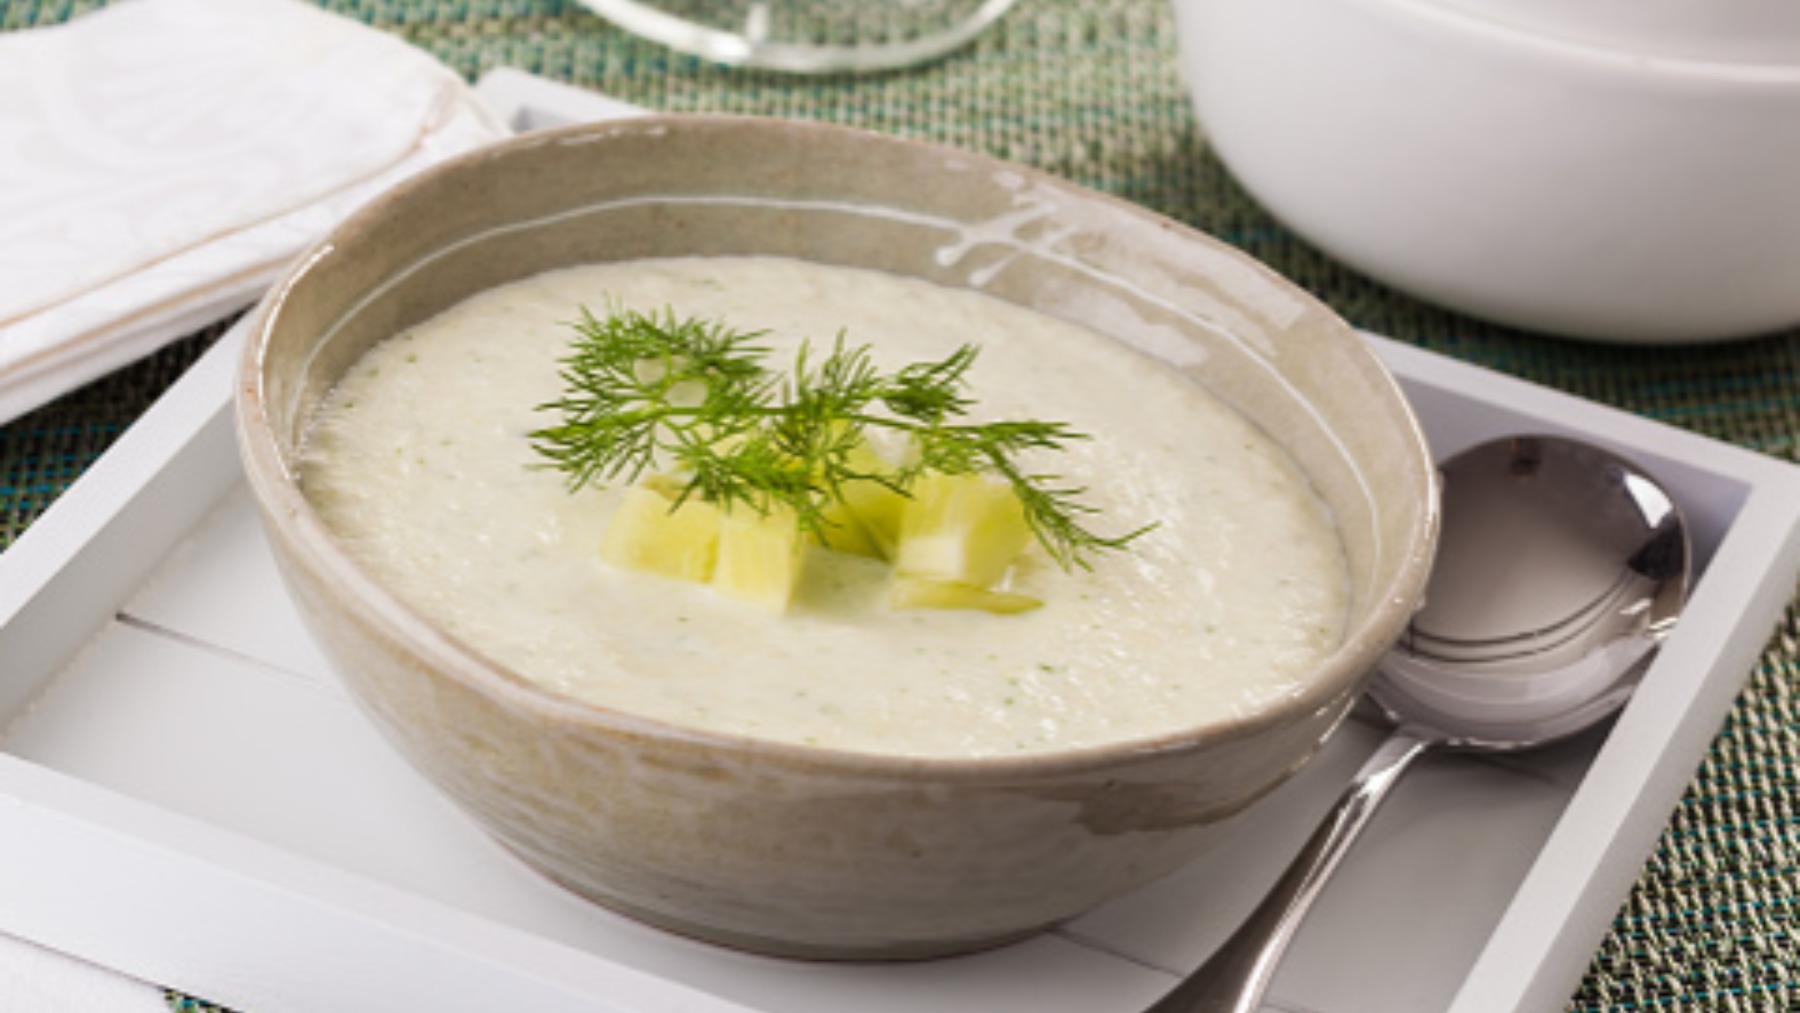 Sopa fría libanesa de pepino y menta, la receta de cuchara más refrescante del verano